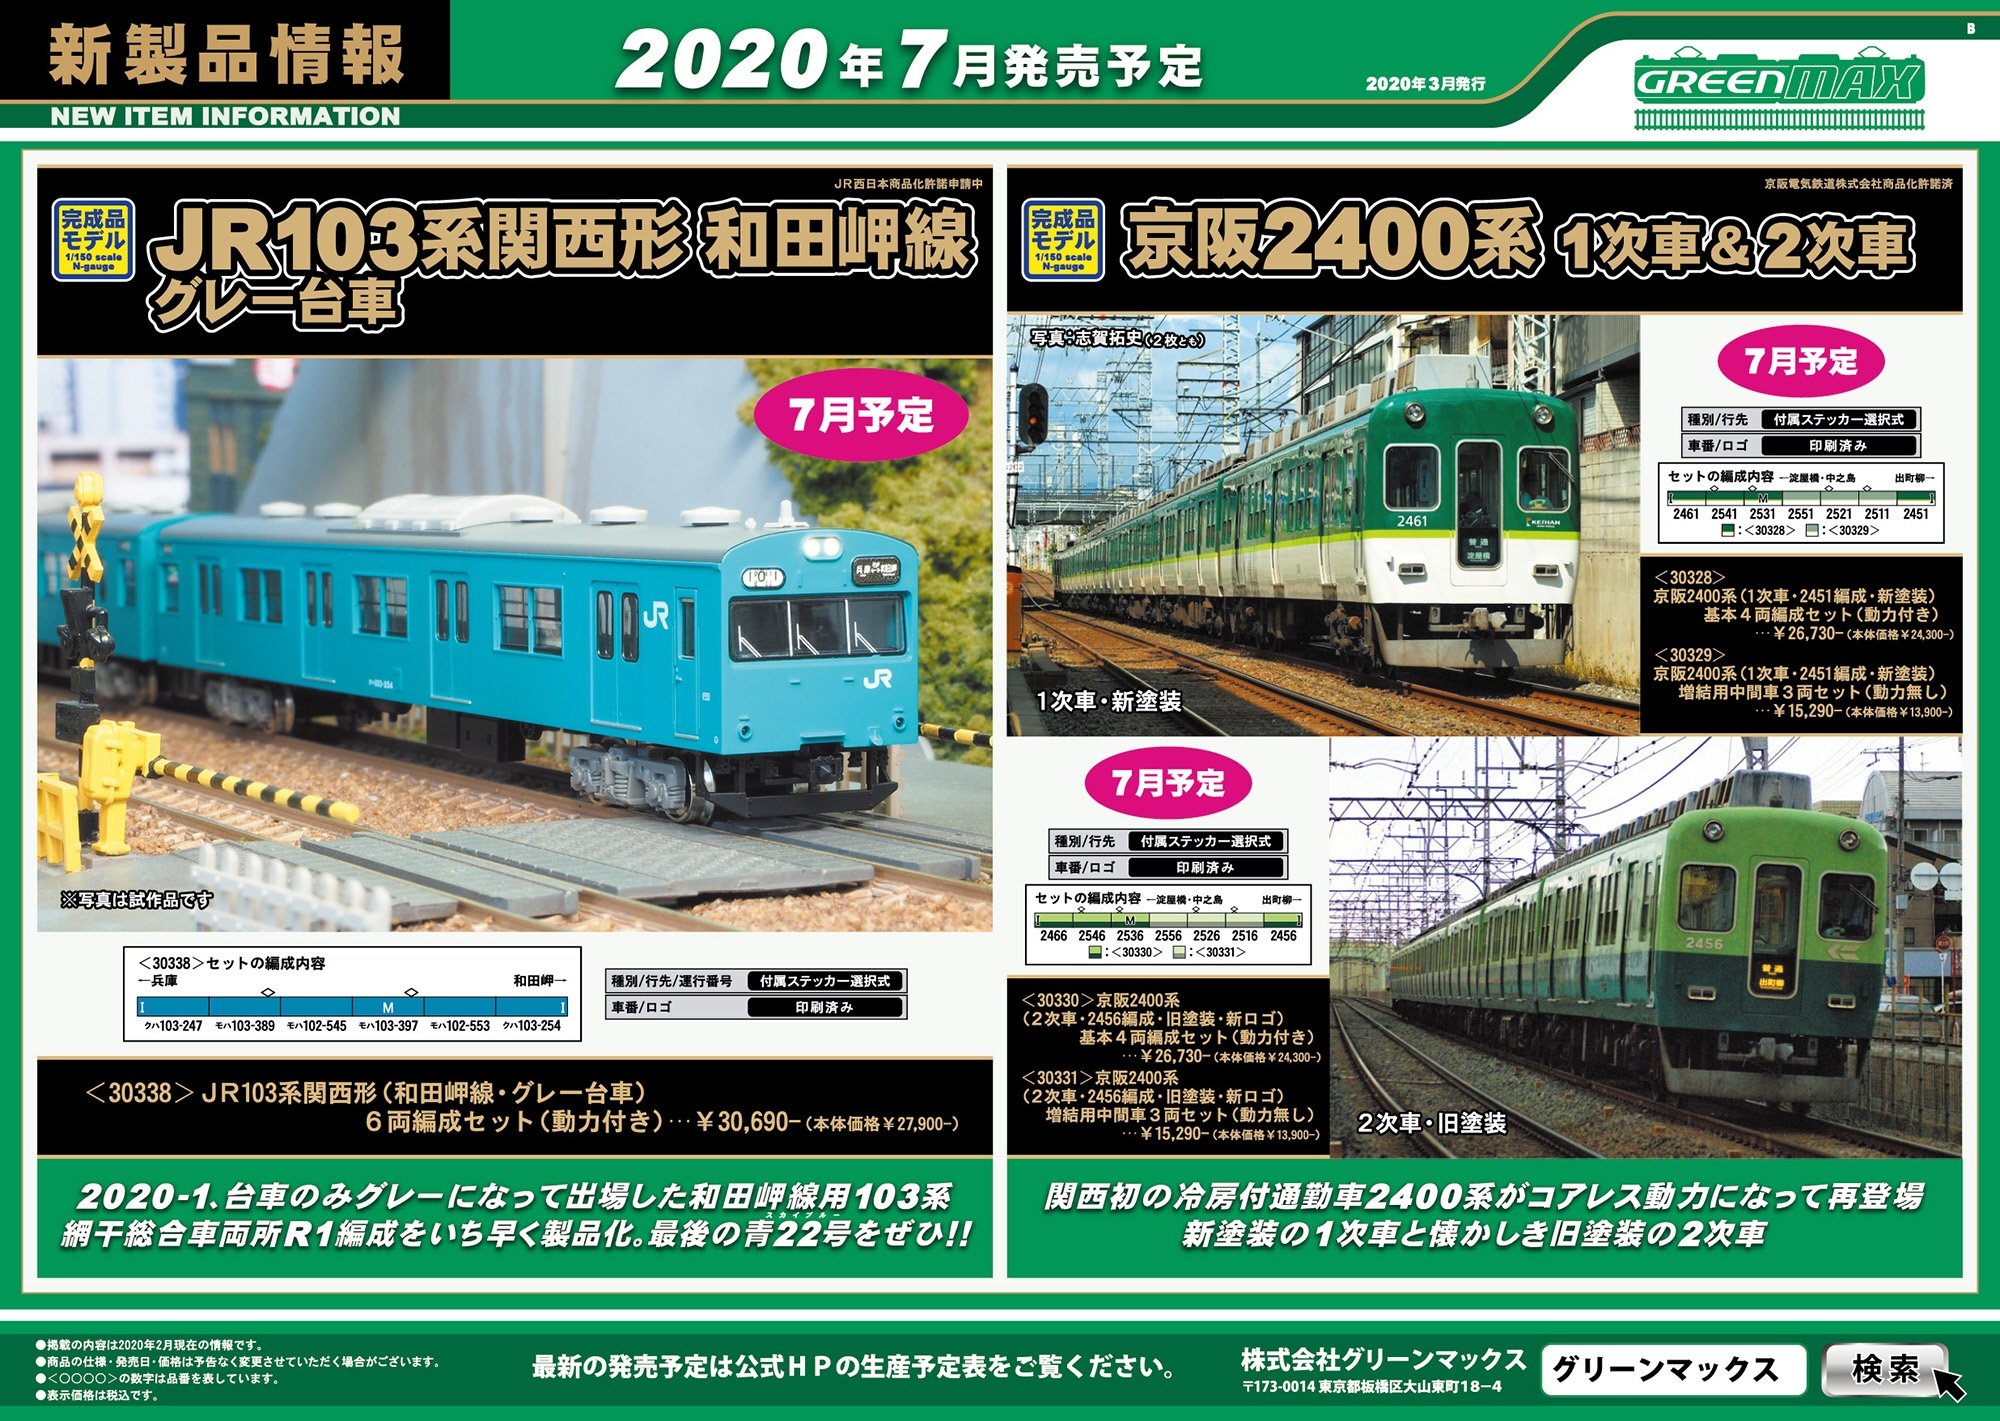 京阪 2400系 (2次車・2456編成・旧塗装・新ロゴ) 増結用中間車3輛 